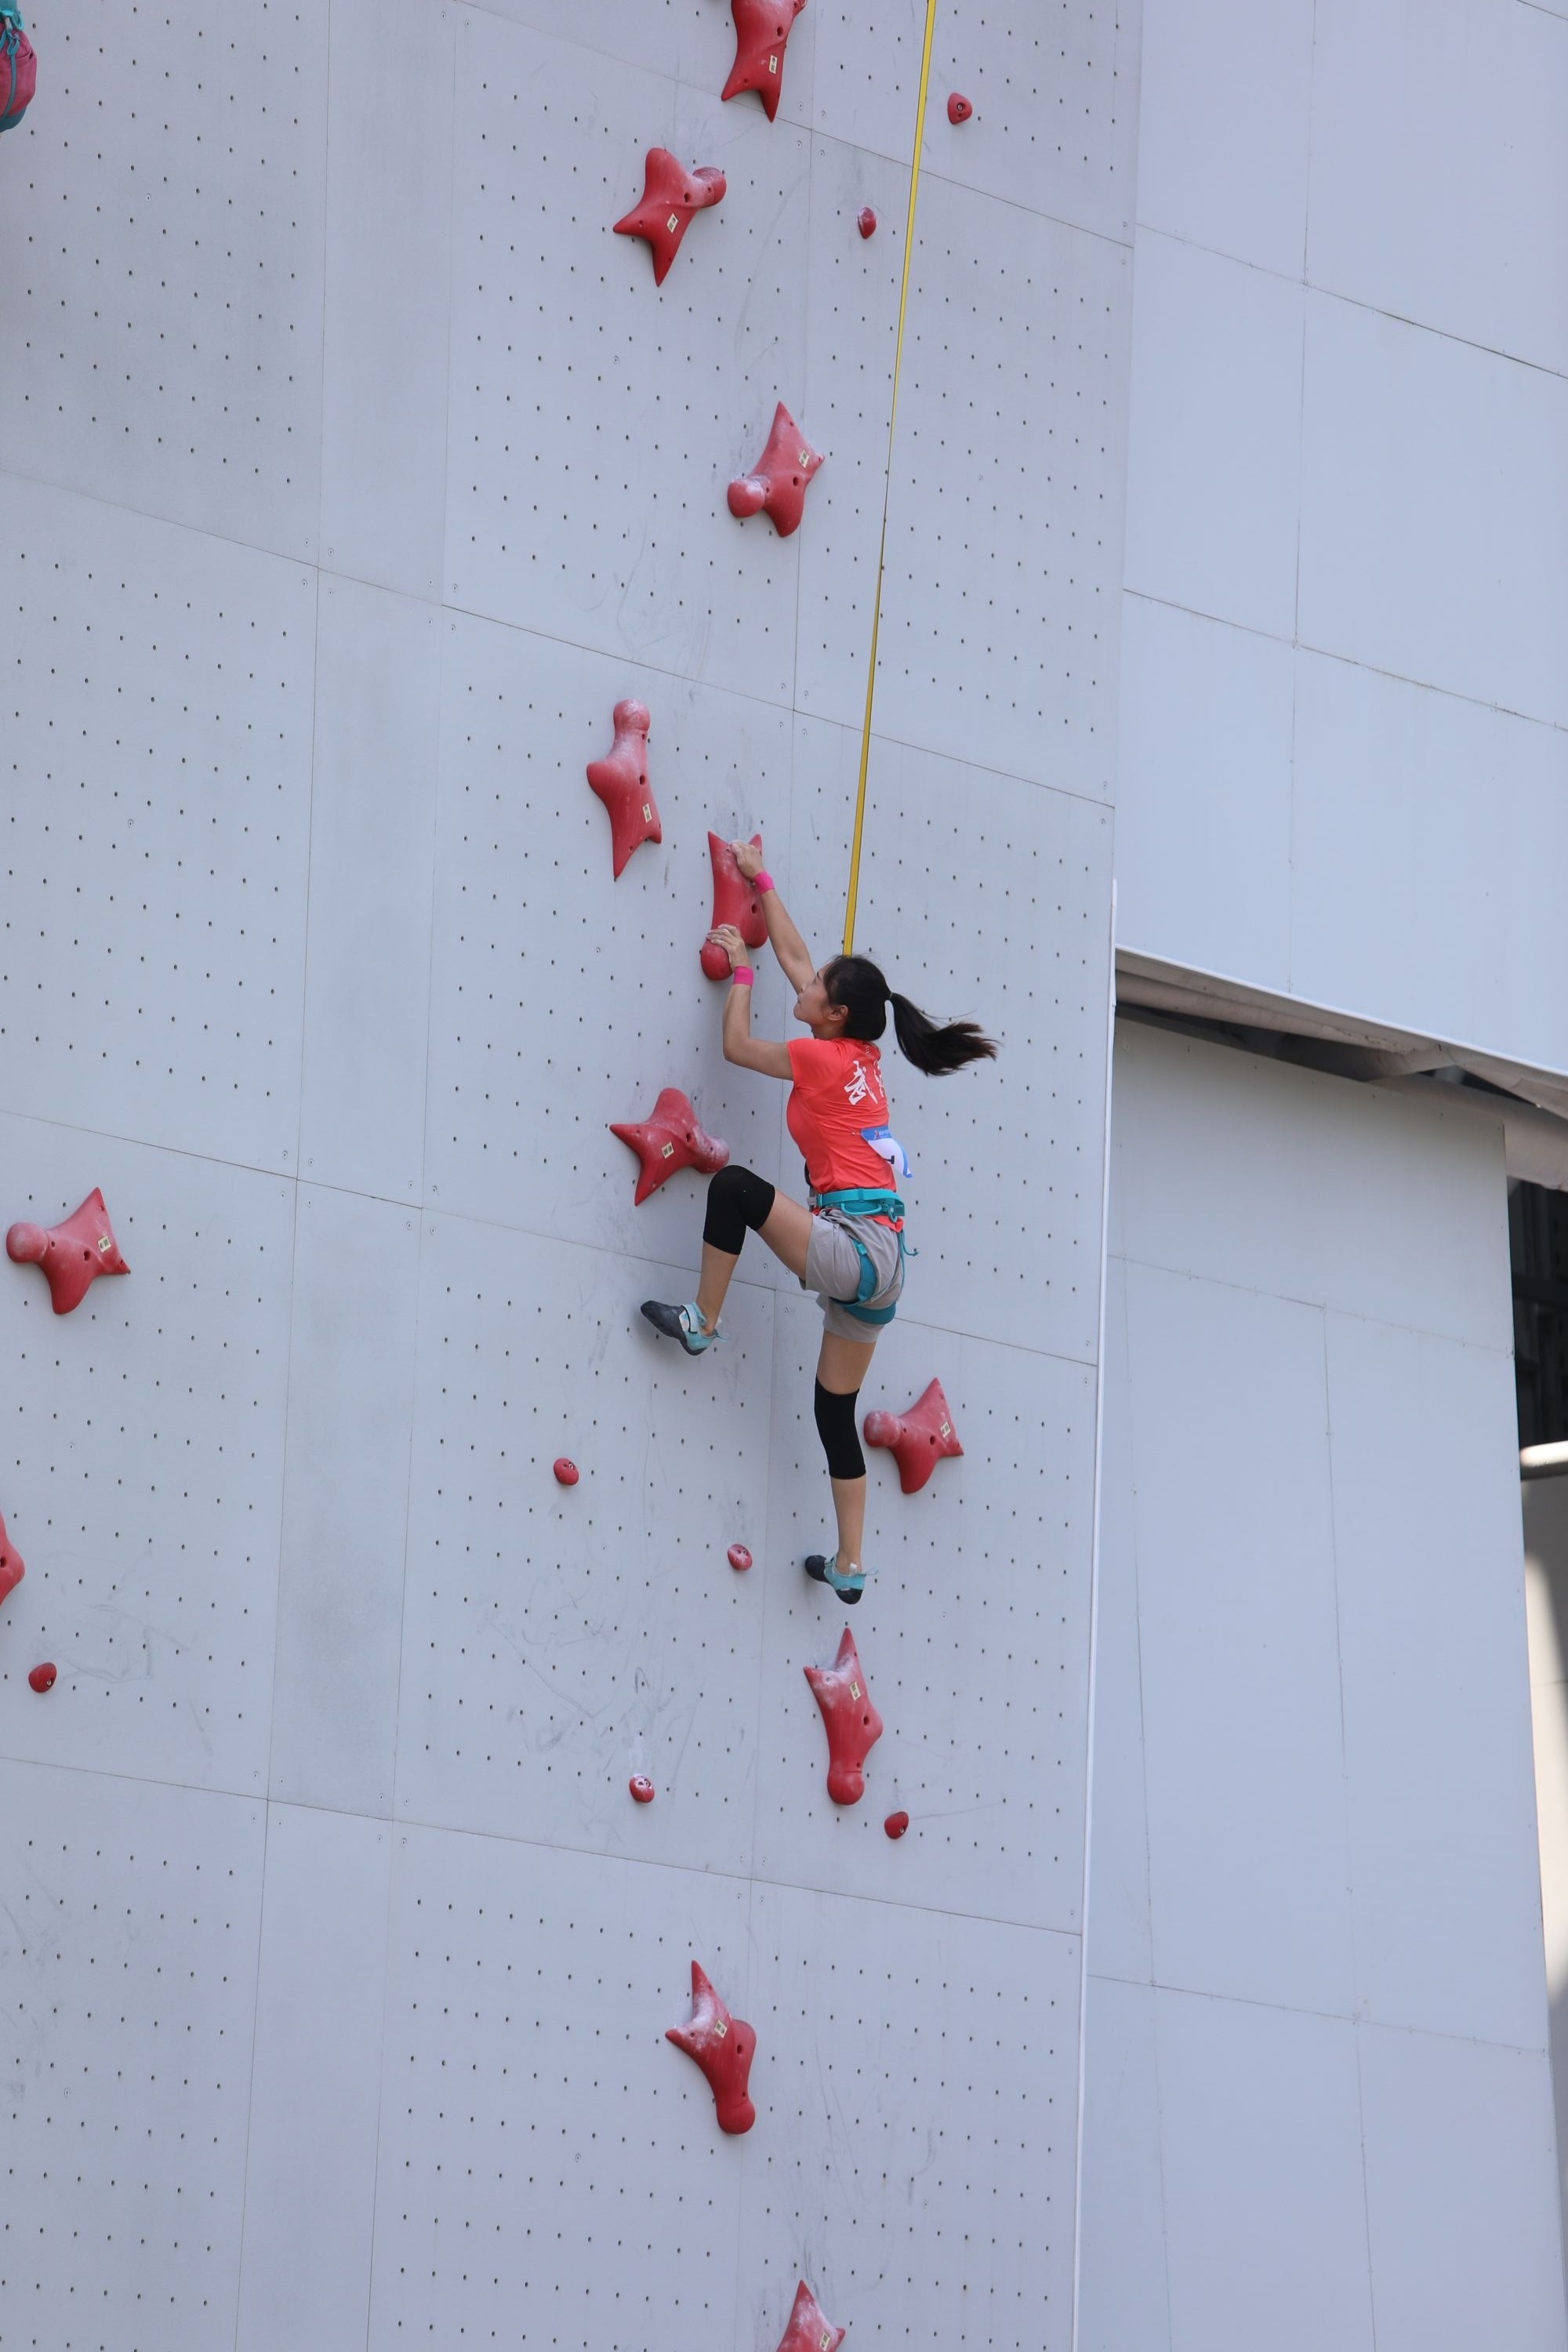 省运会攀岩比赛14岁小姑娘为武汉创造历史